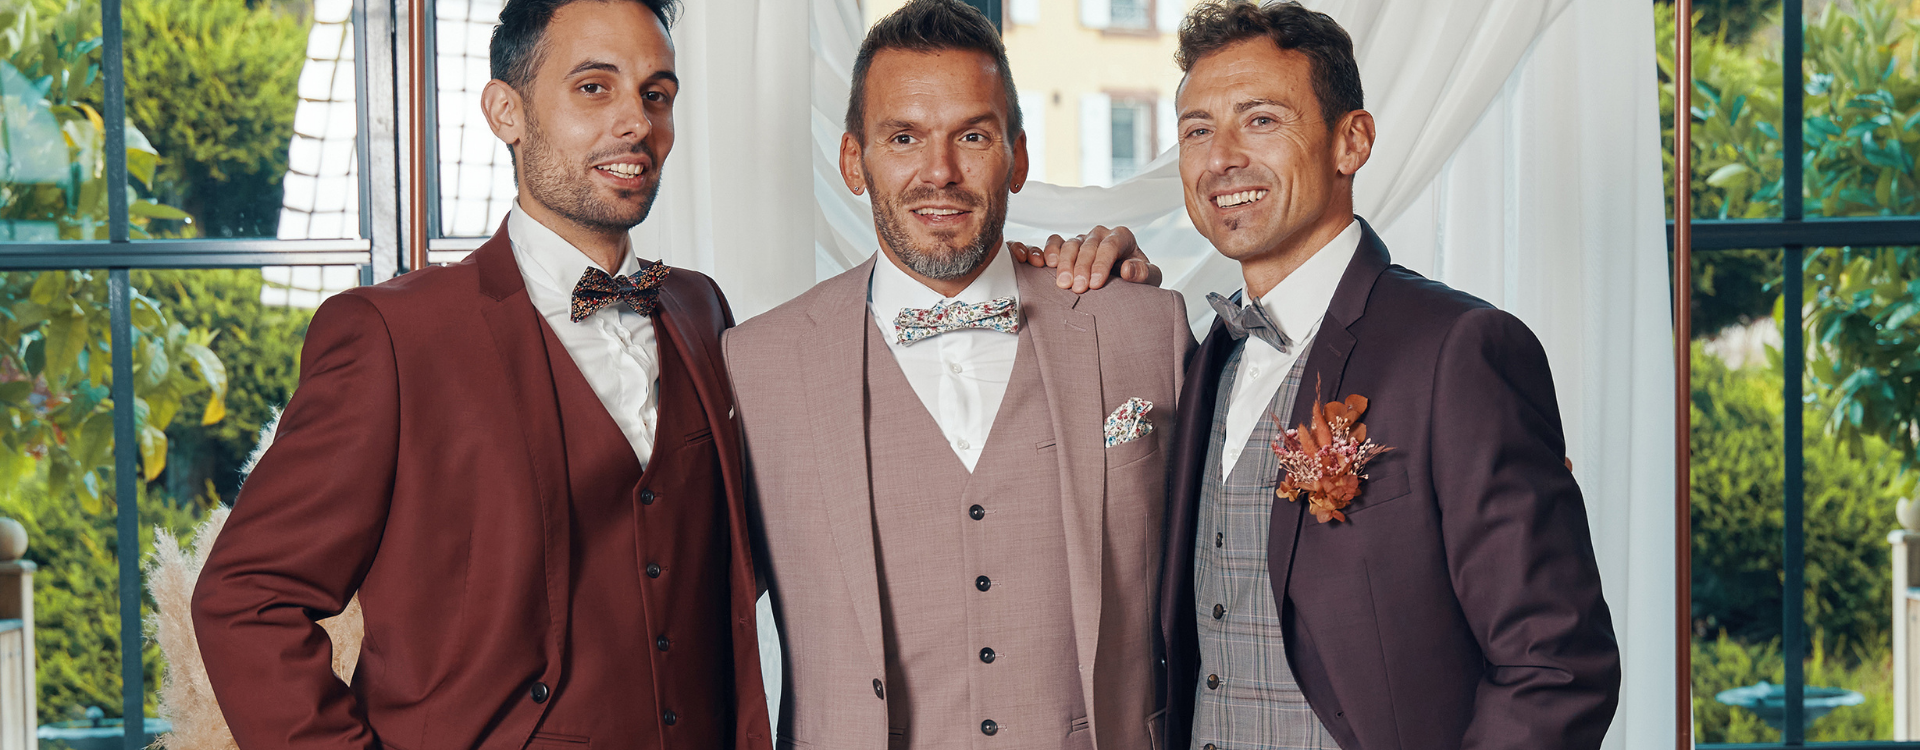 Terracotta suit, Besançon wedding suit, ceremony suit, Hafnium